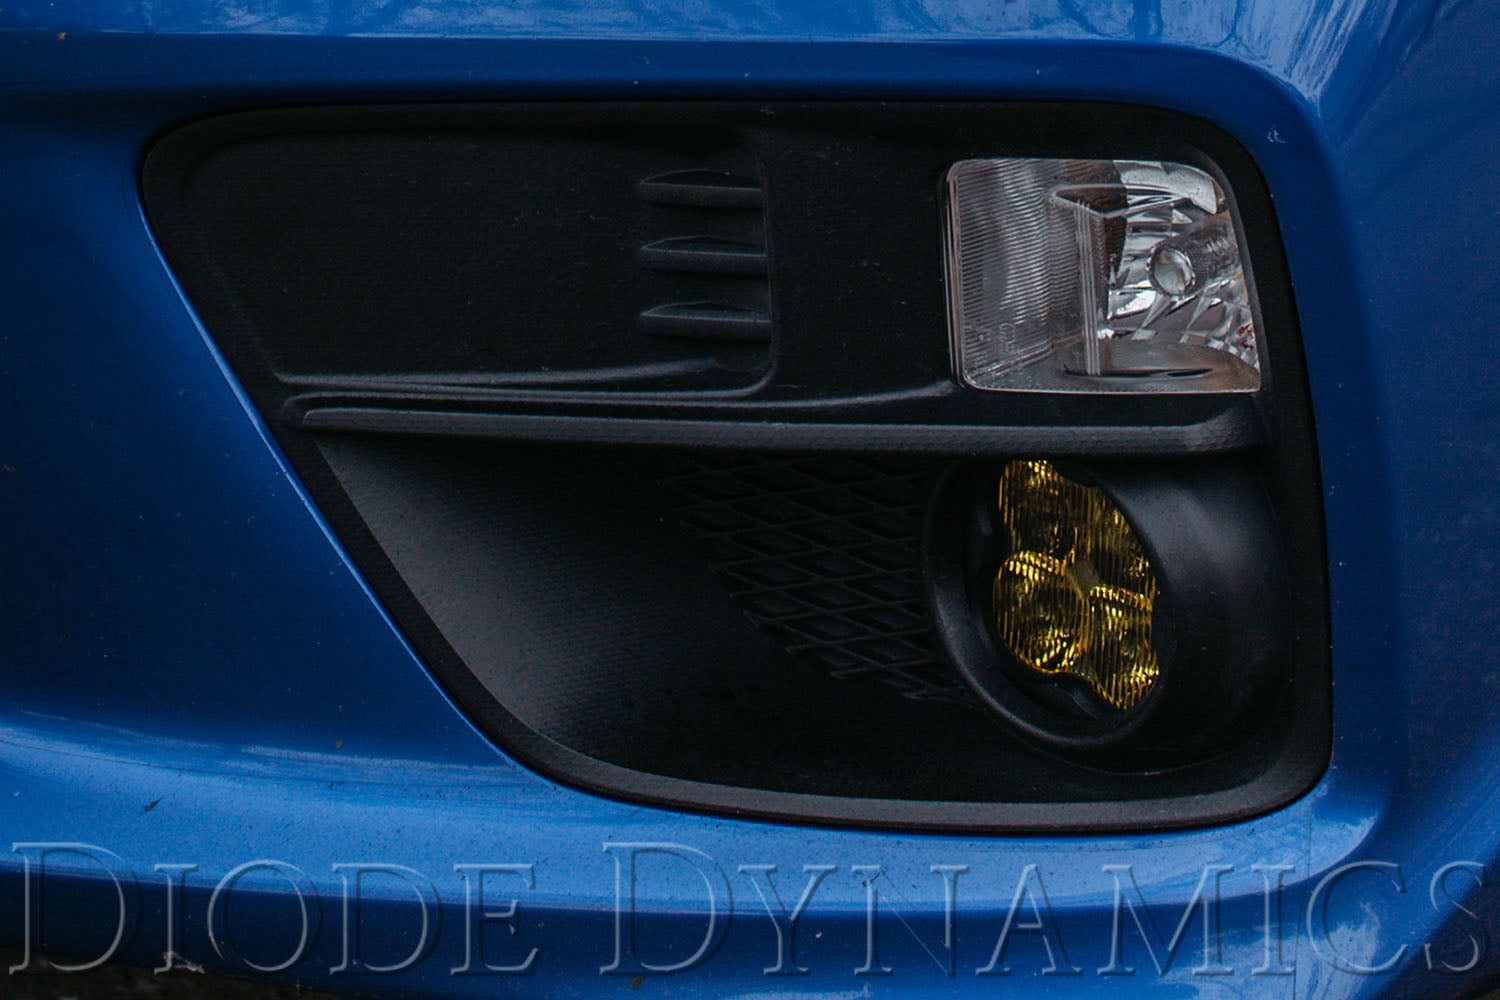 SS3 LED Fog Light Kit for 2005-2013 Nissan Xterra White SAE/DOT Driving Pro Diode Dynamics